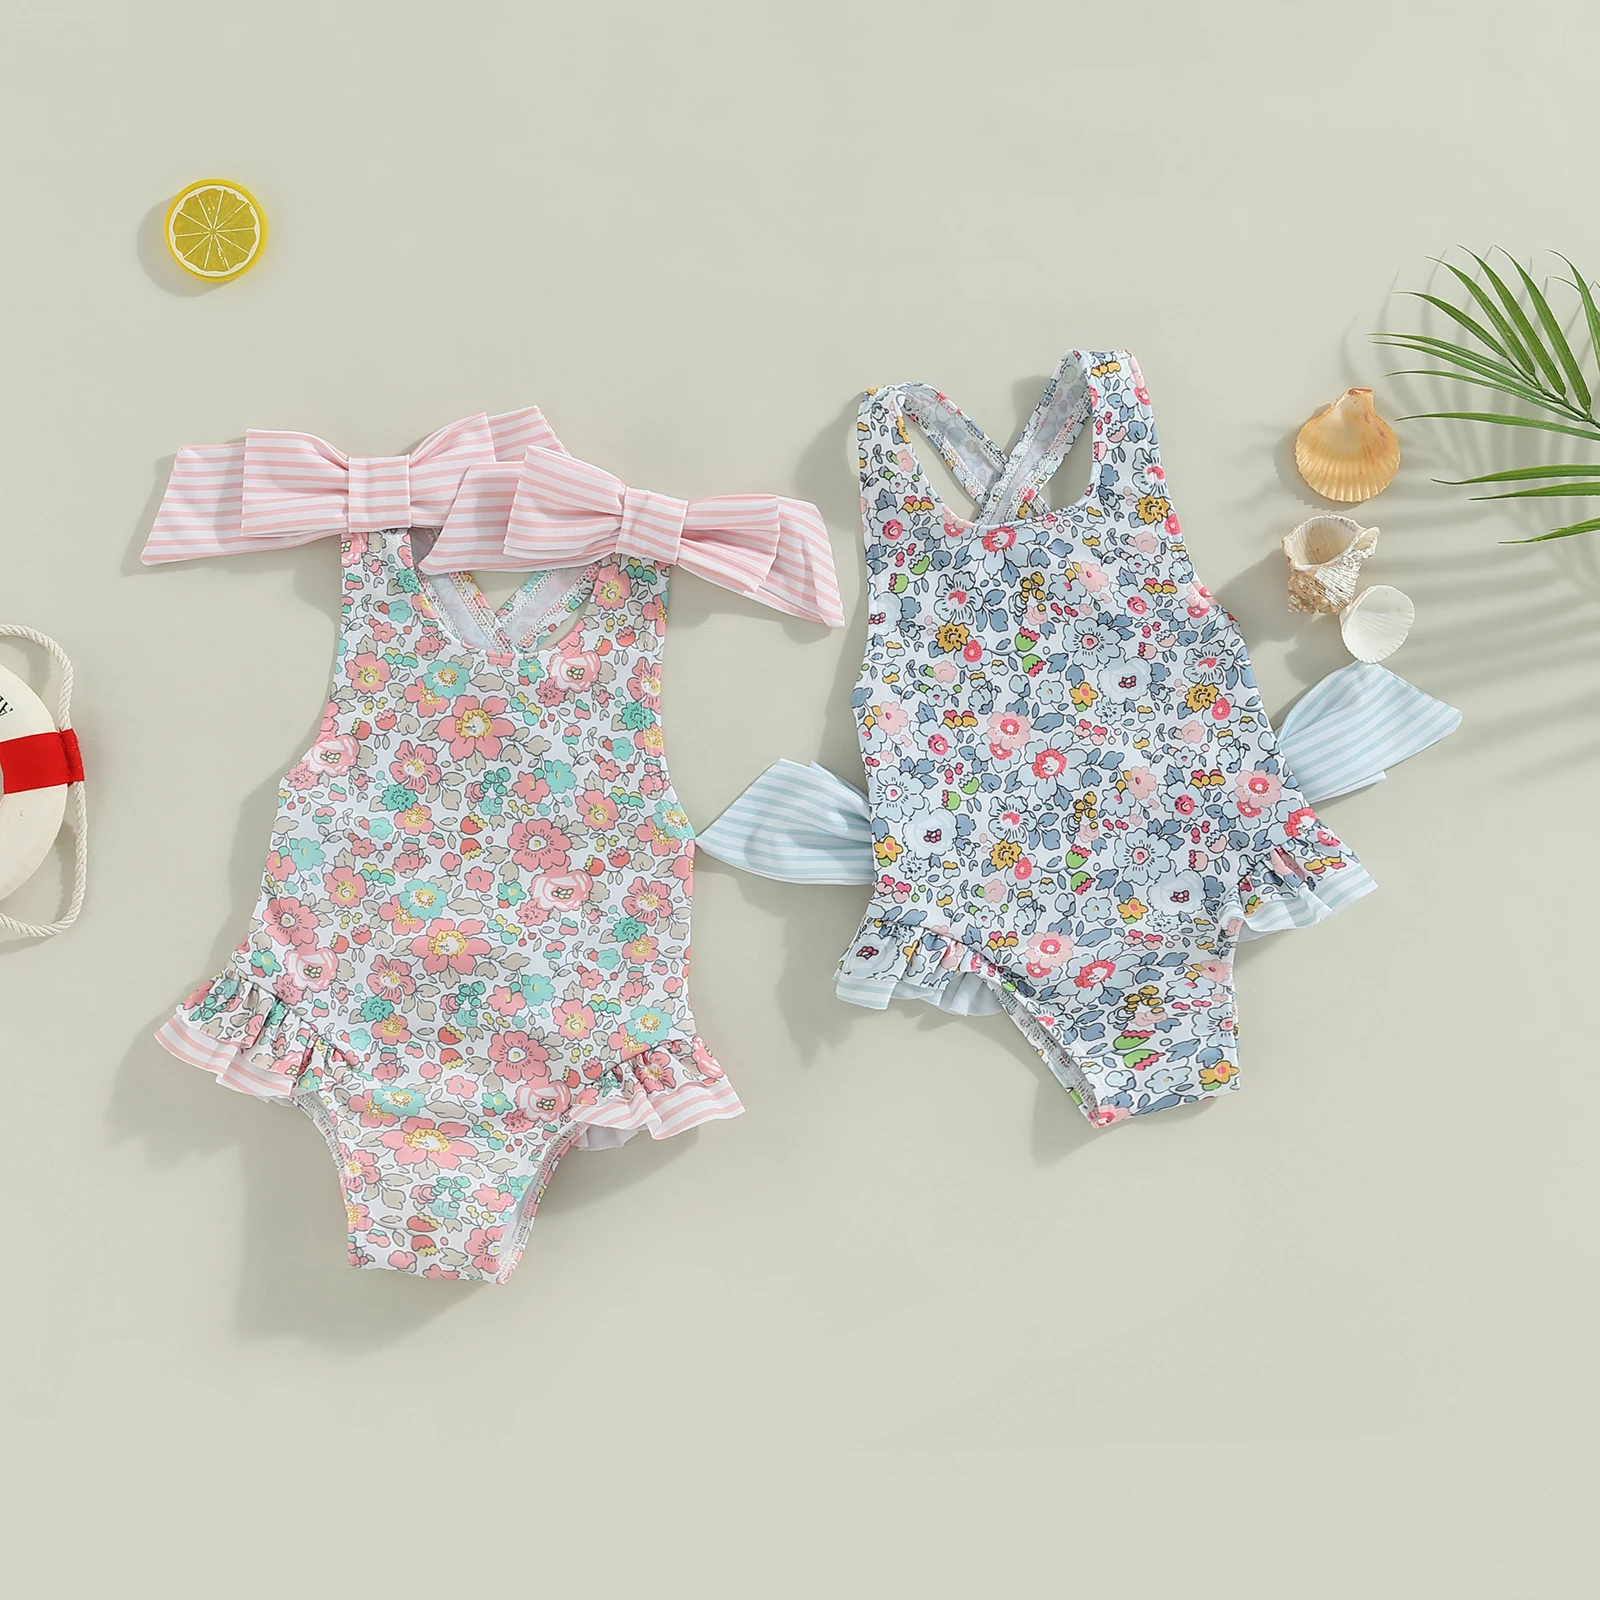 Для детей 1-6 лет, летний купальник для маленьких девочек, без рукавов, с перекрестной спинкой, с цветочным принтом и рюшами, купальный костюм 0